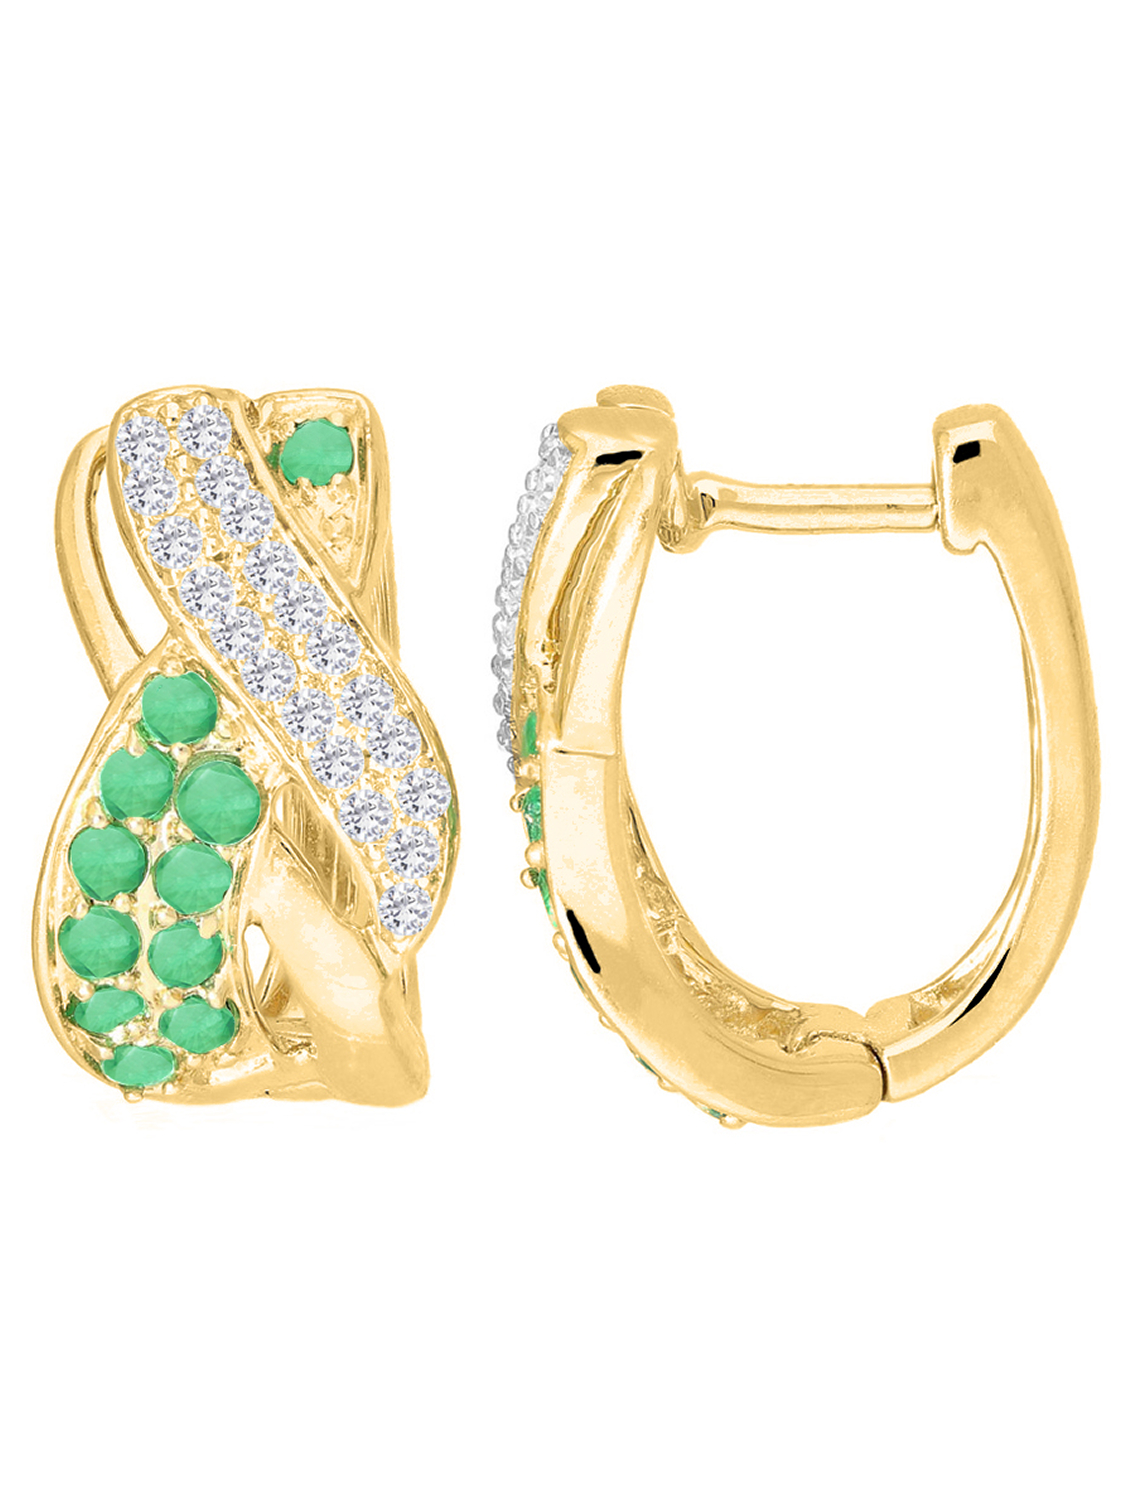 Damencreolen aus echtem Gelbgold mit Diamant und Smaragd Edelsteinen | Detailansicht